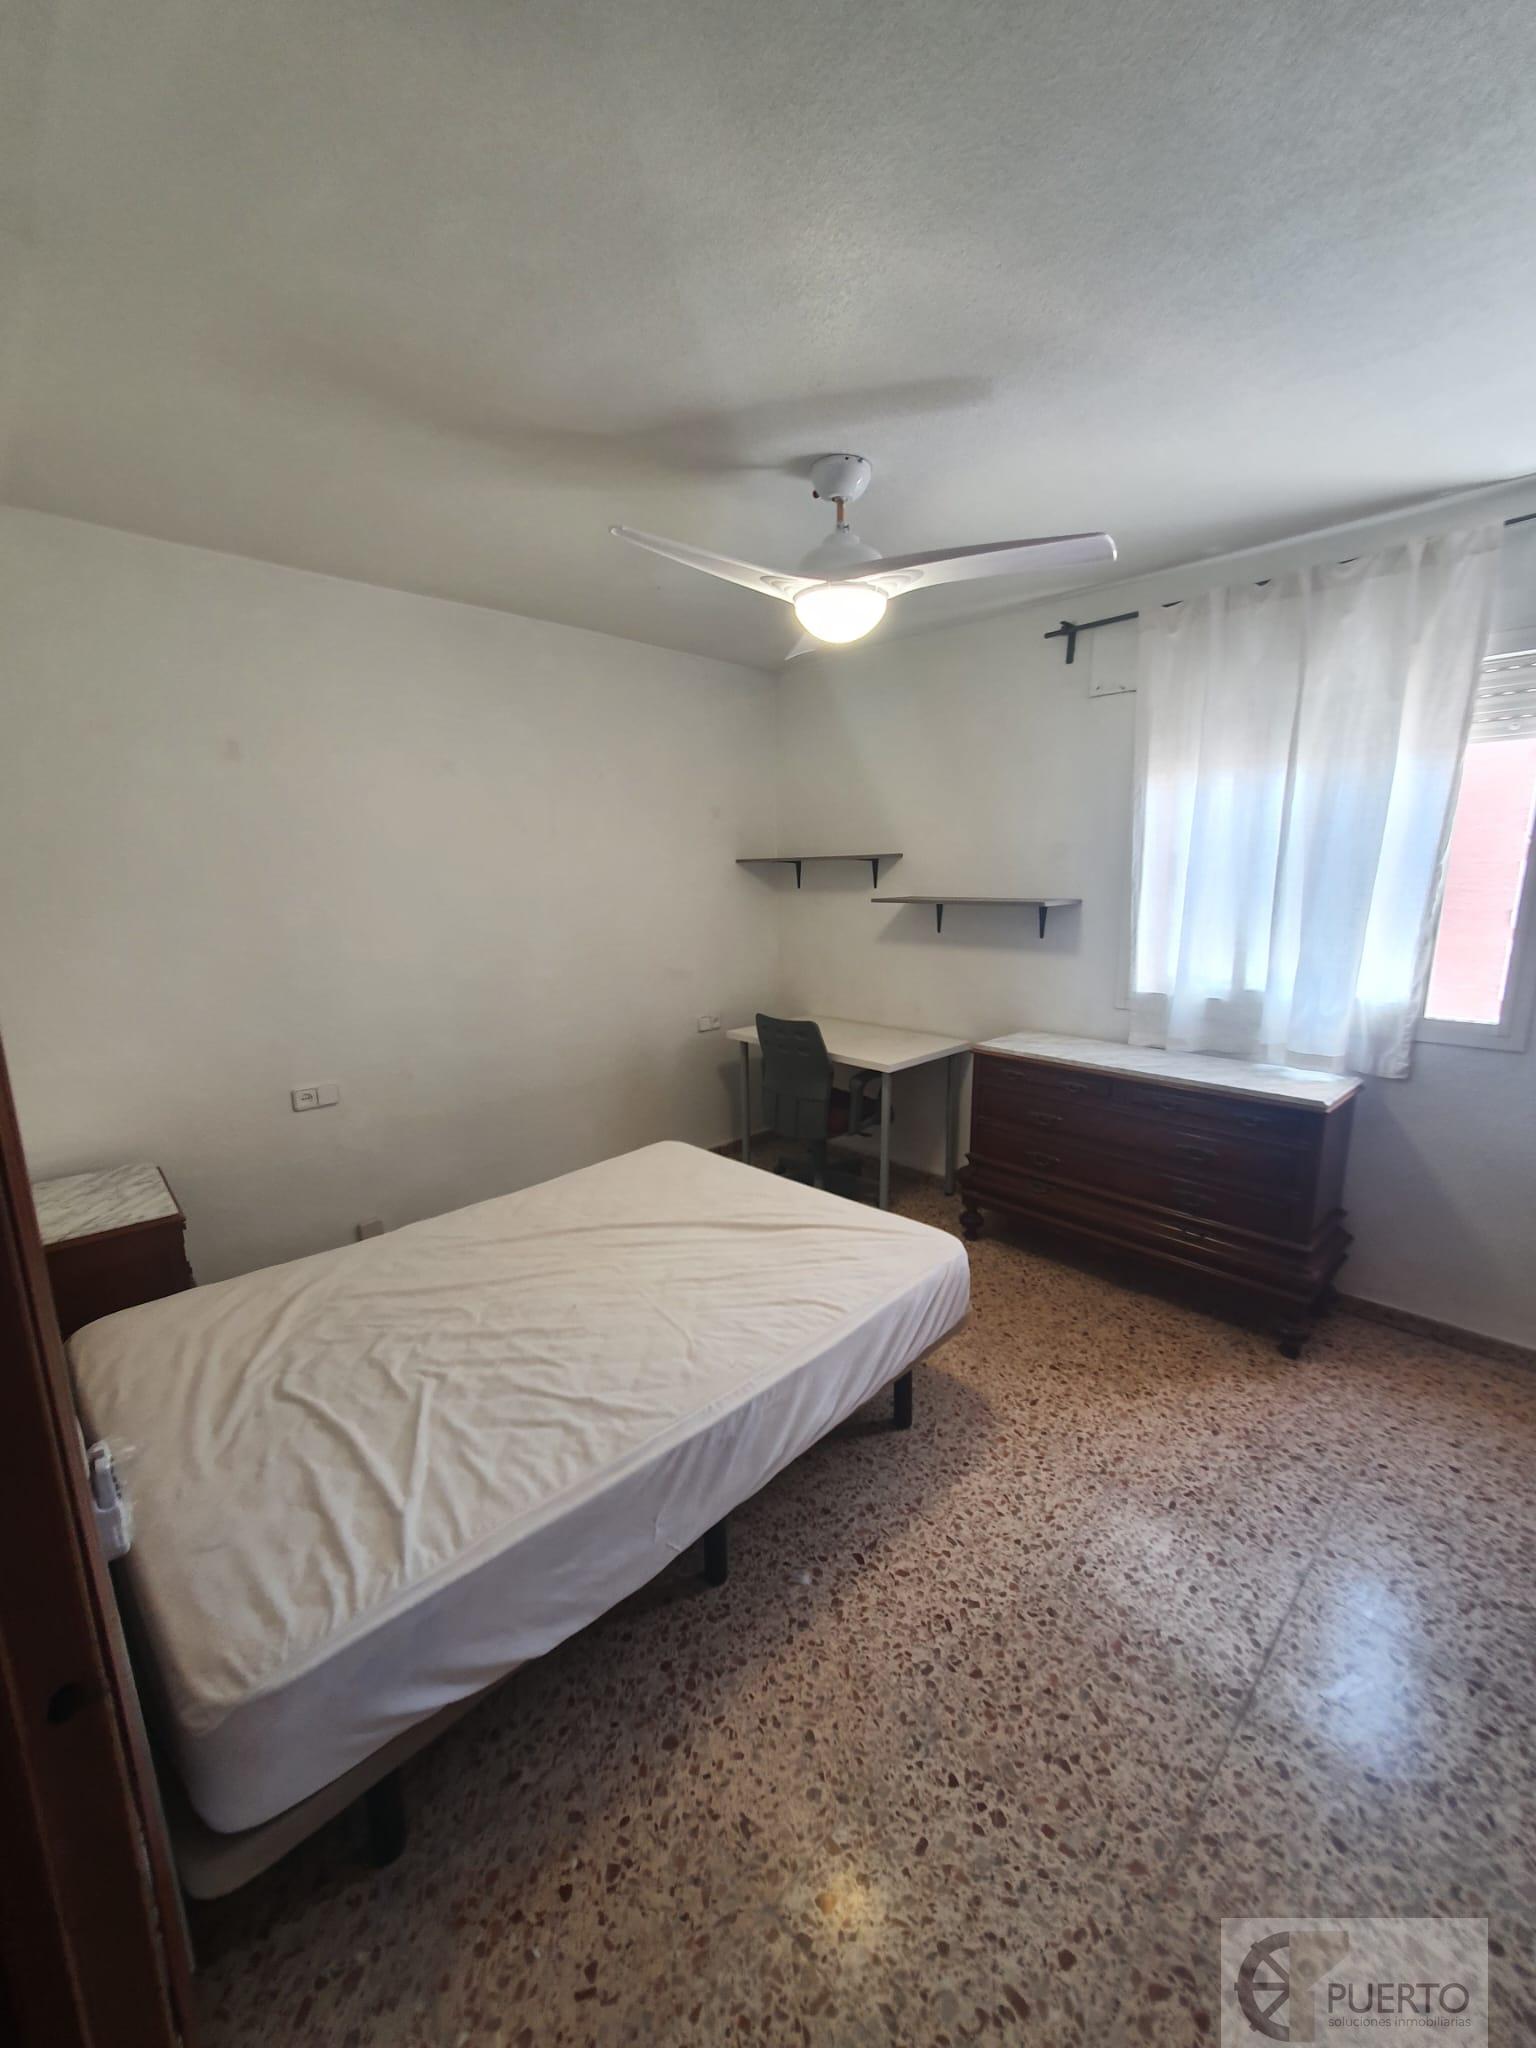 De location de chambre dans Murcia